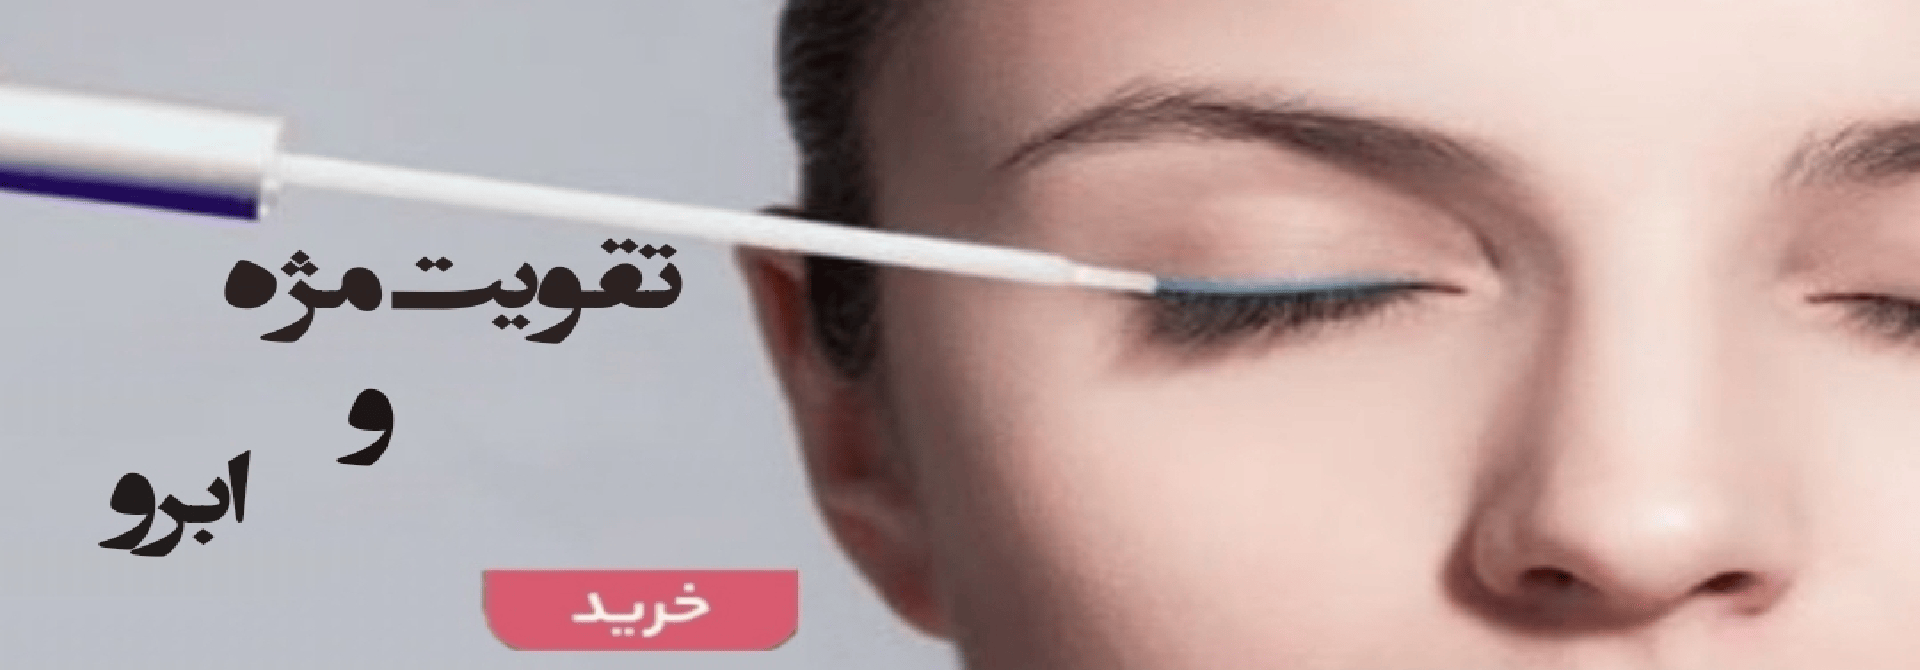 خرید آنلاین انواع تقویت مژه اصلی و اورجینال-فروشگاه اینترنتی آرایشی و بهداشتی آزارو در شیراز-ارسال به سراسر کشور